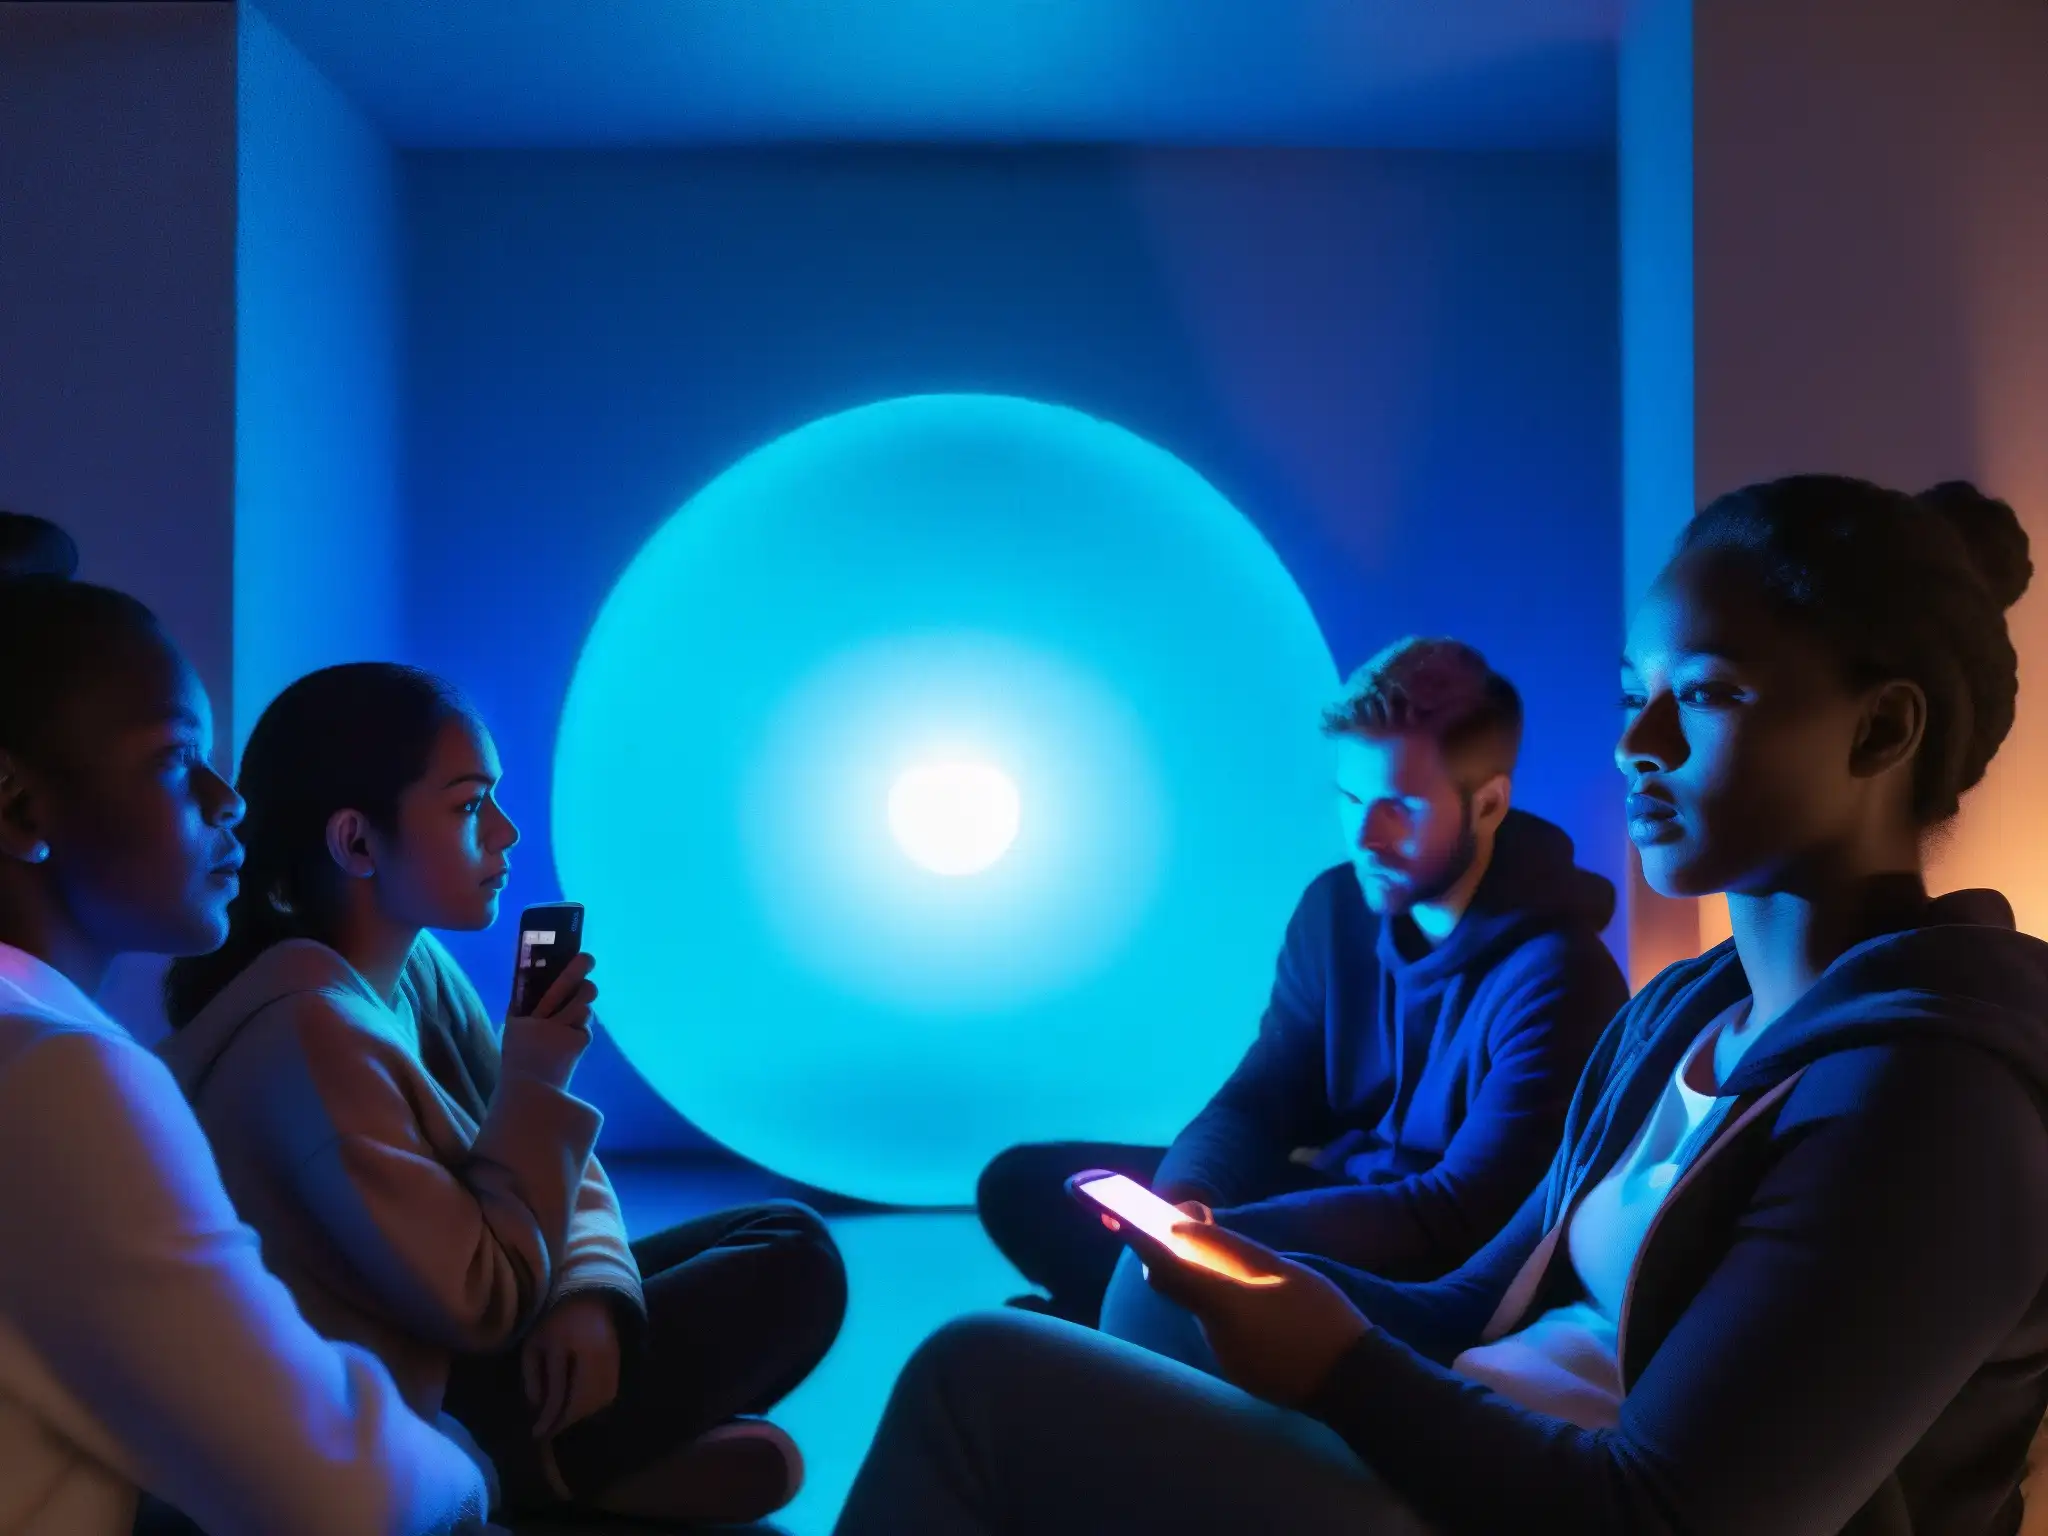 Un grupo de personas escuchando una leyenda urbana digital en una habitación tenue, capturando el fenómeno de las leyendas urbanas digitales